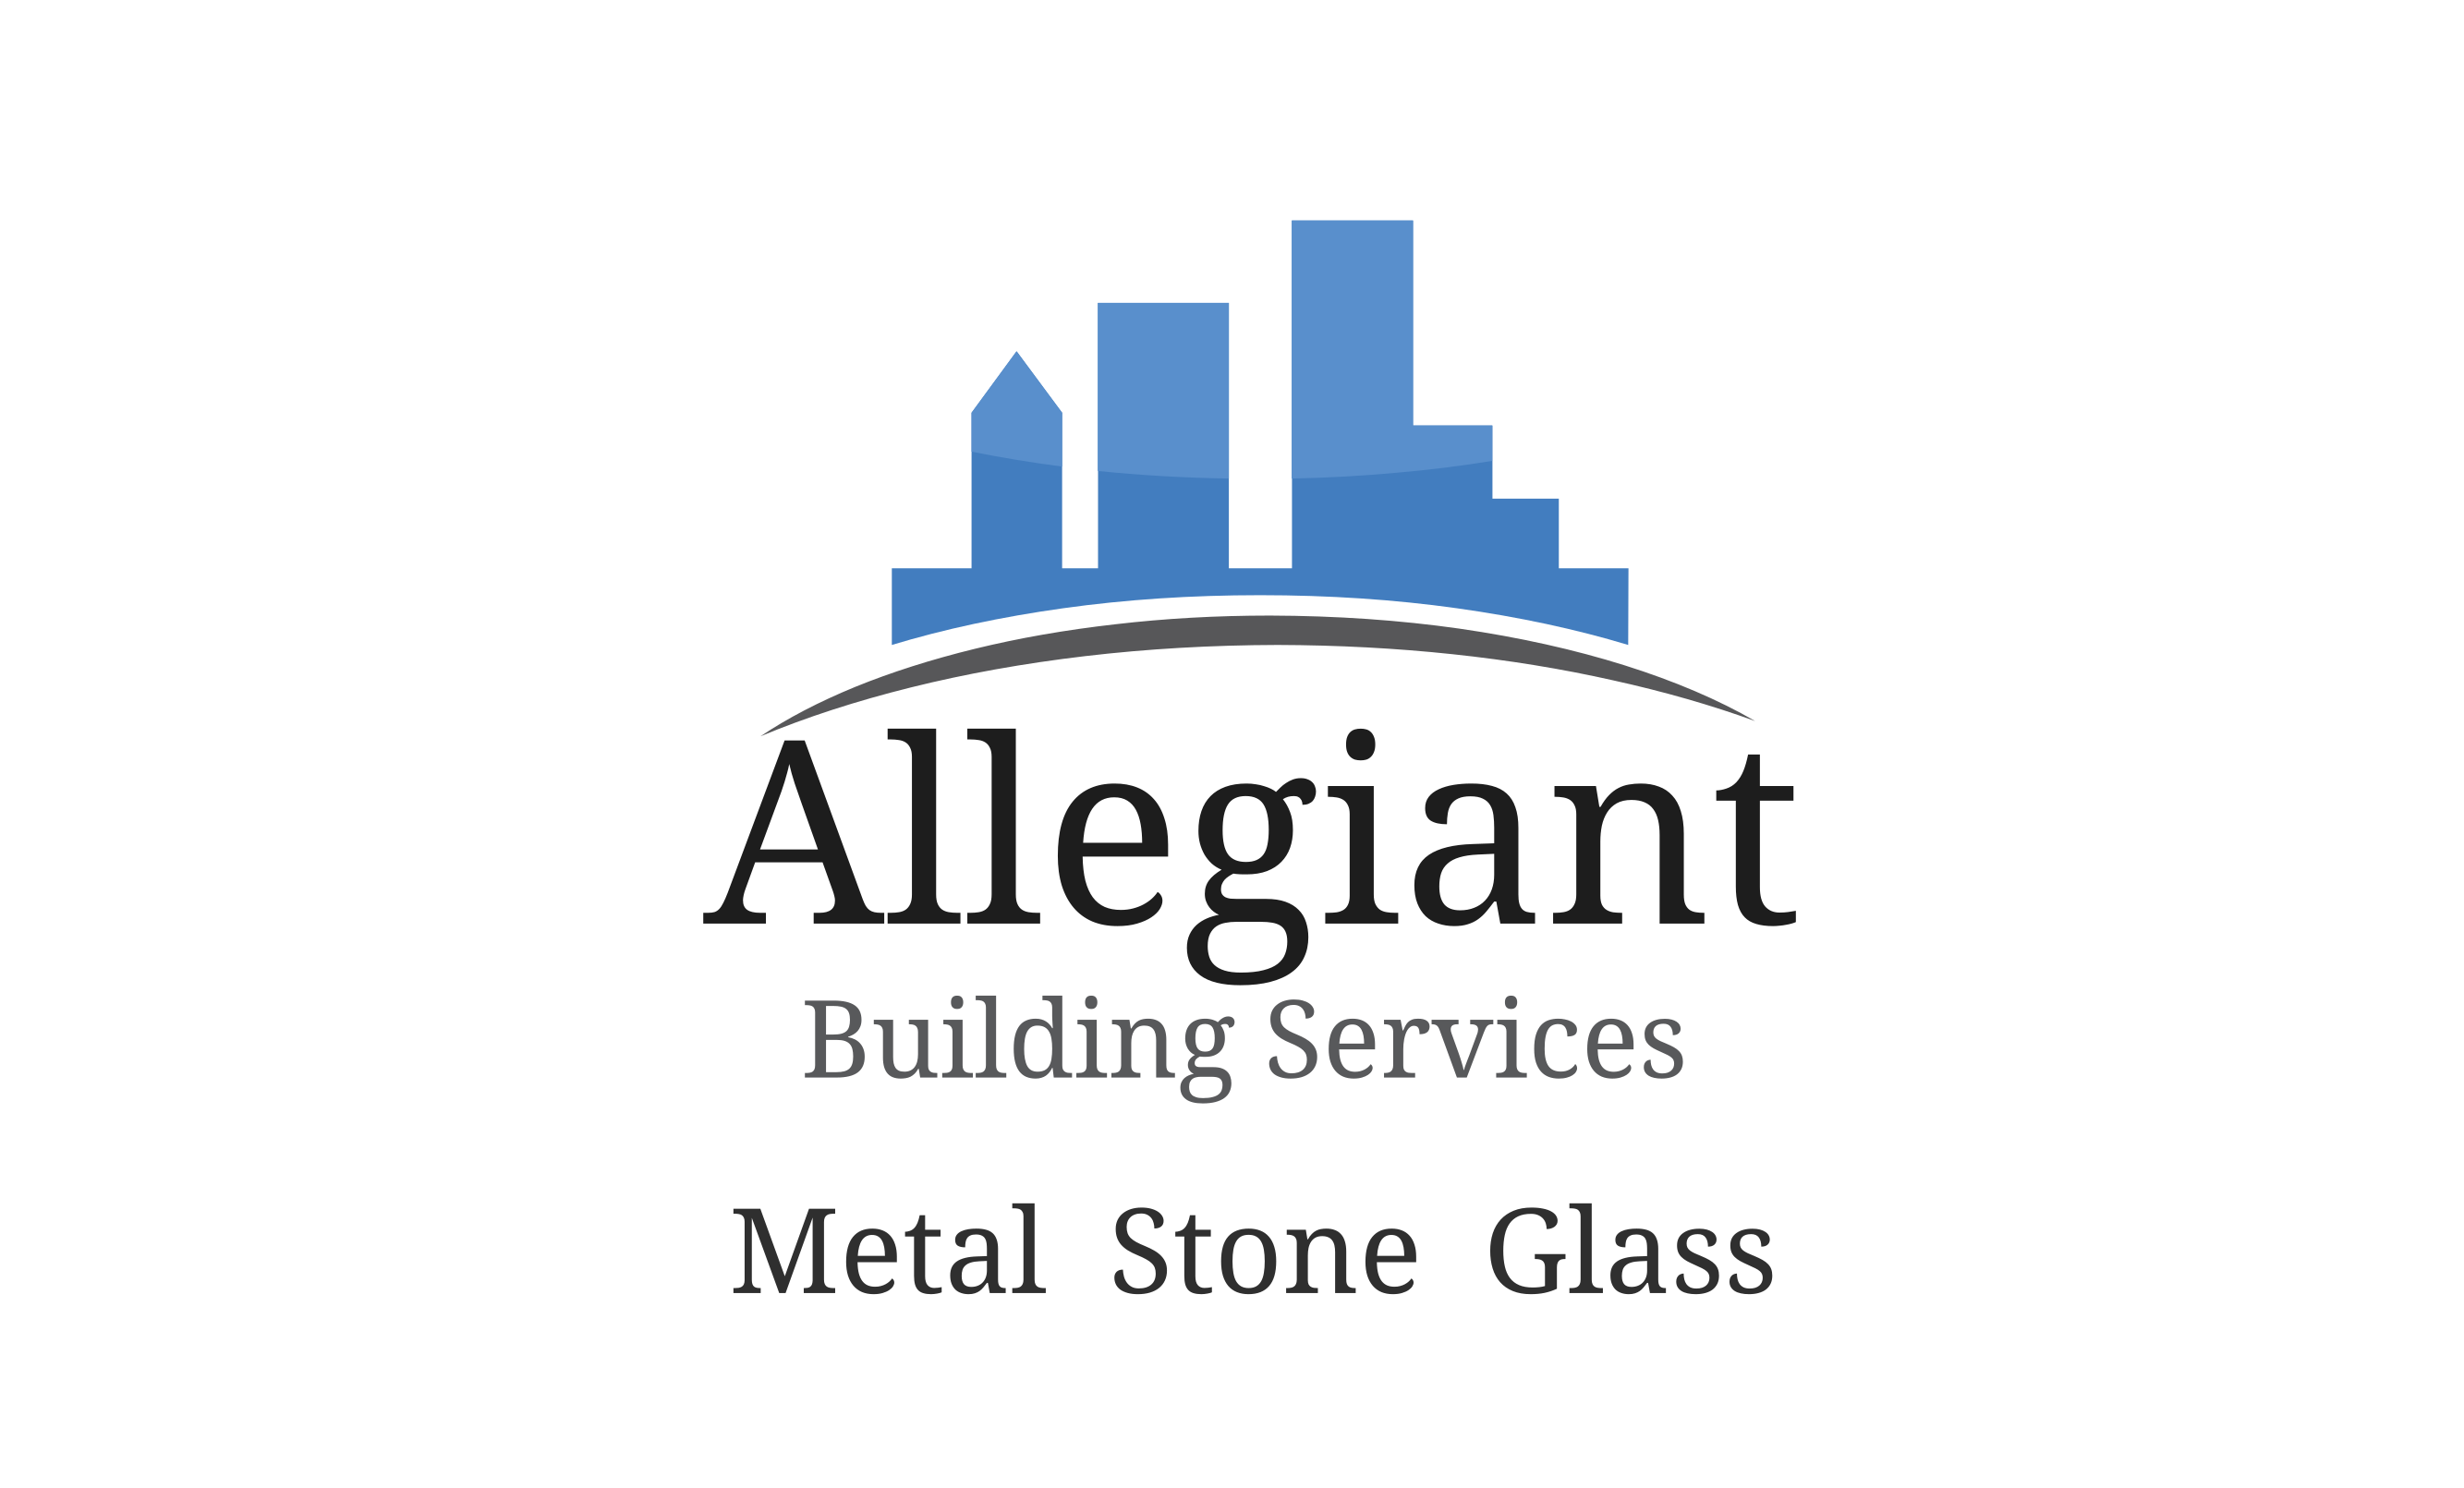 Allegiant Building Services